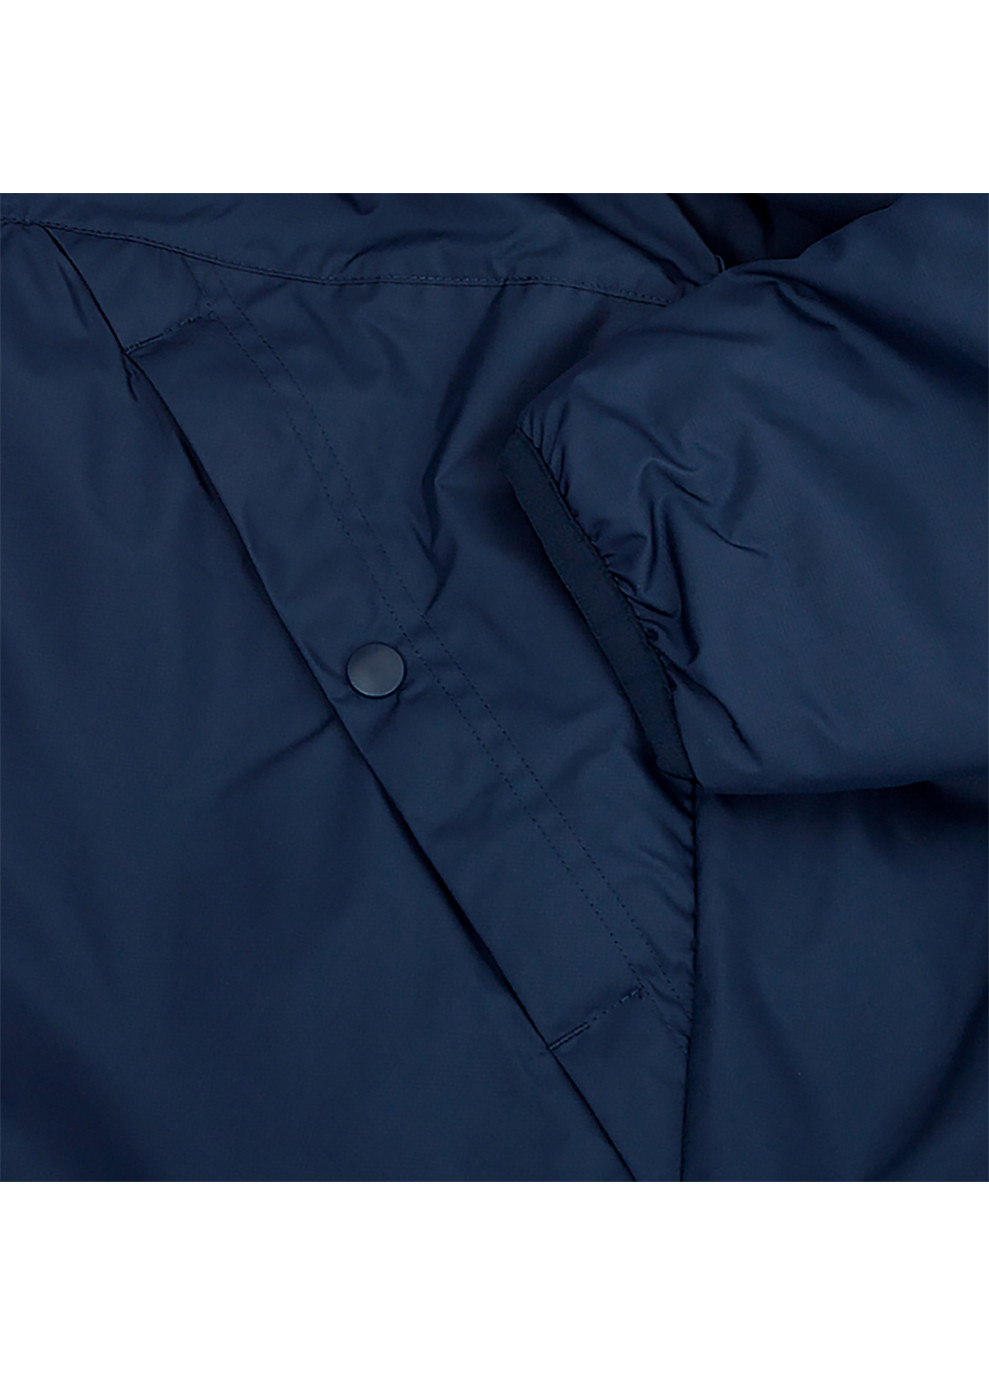 Синя демісезонна чоловіча куртка m nk syn fl rpl park20 sdf jkt синій l (cw6156-451 l) Nike